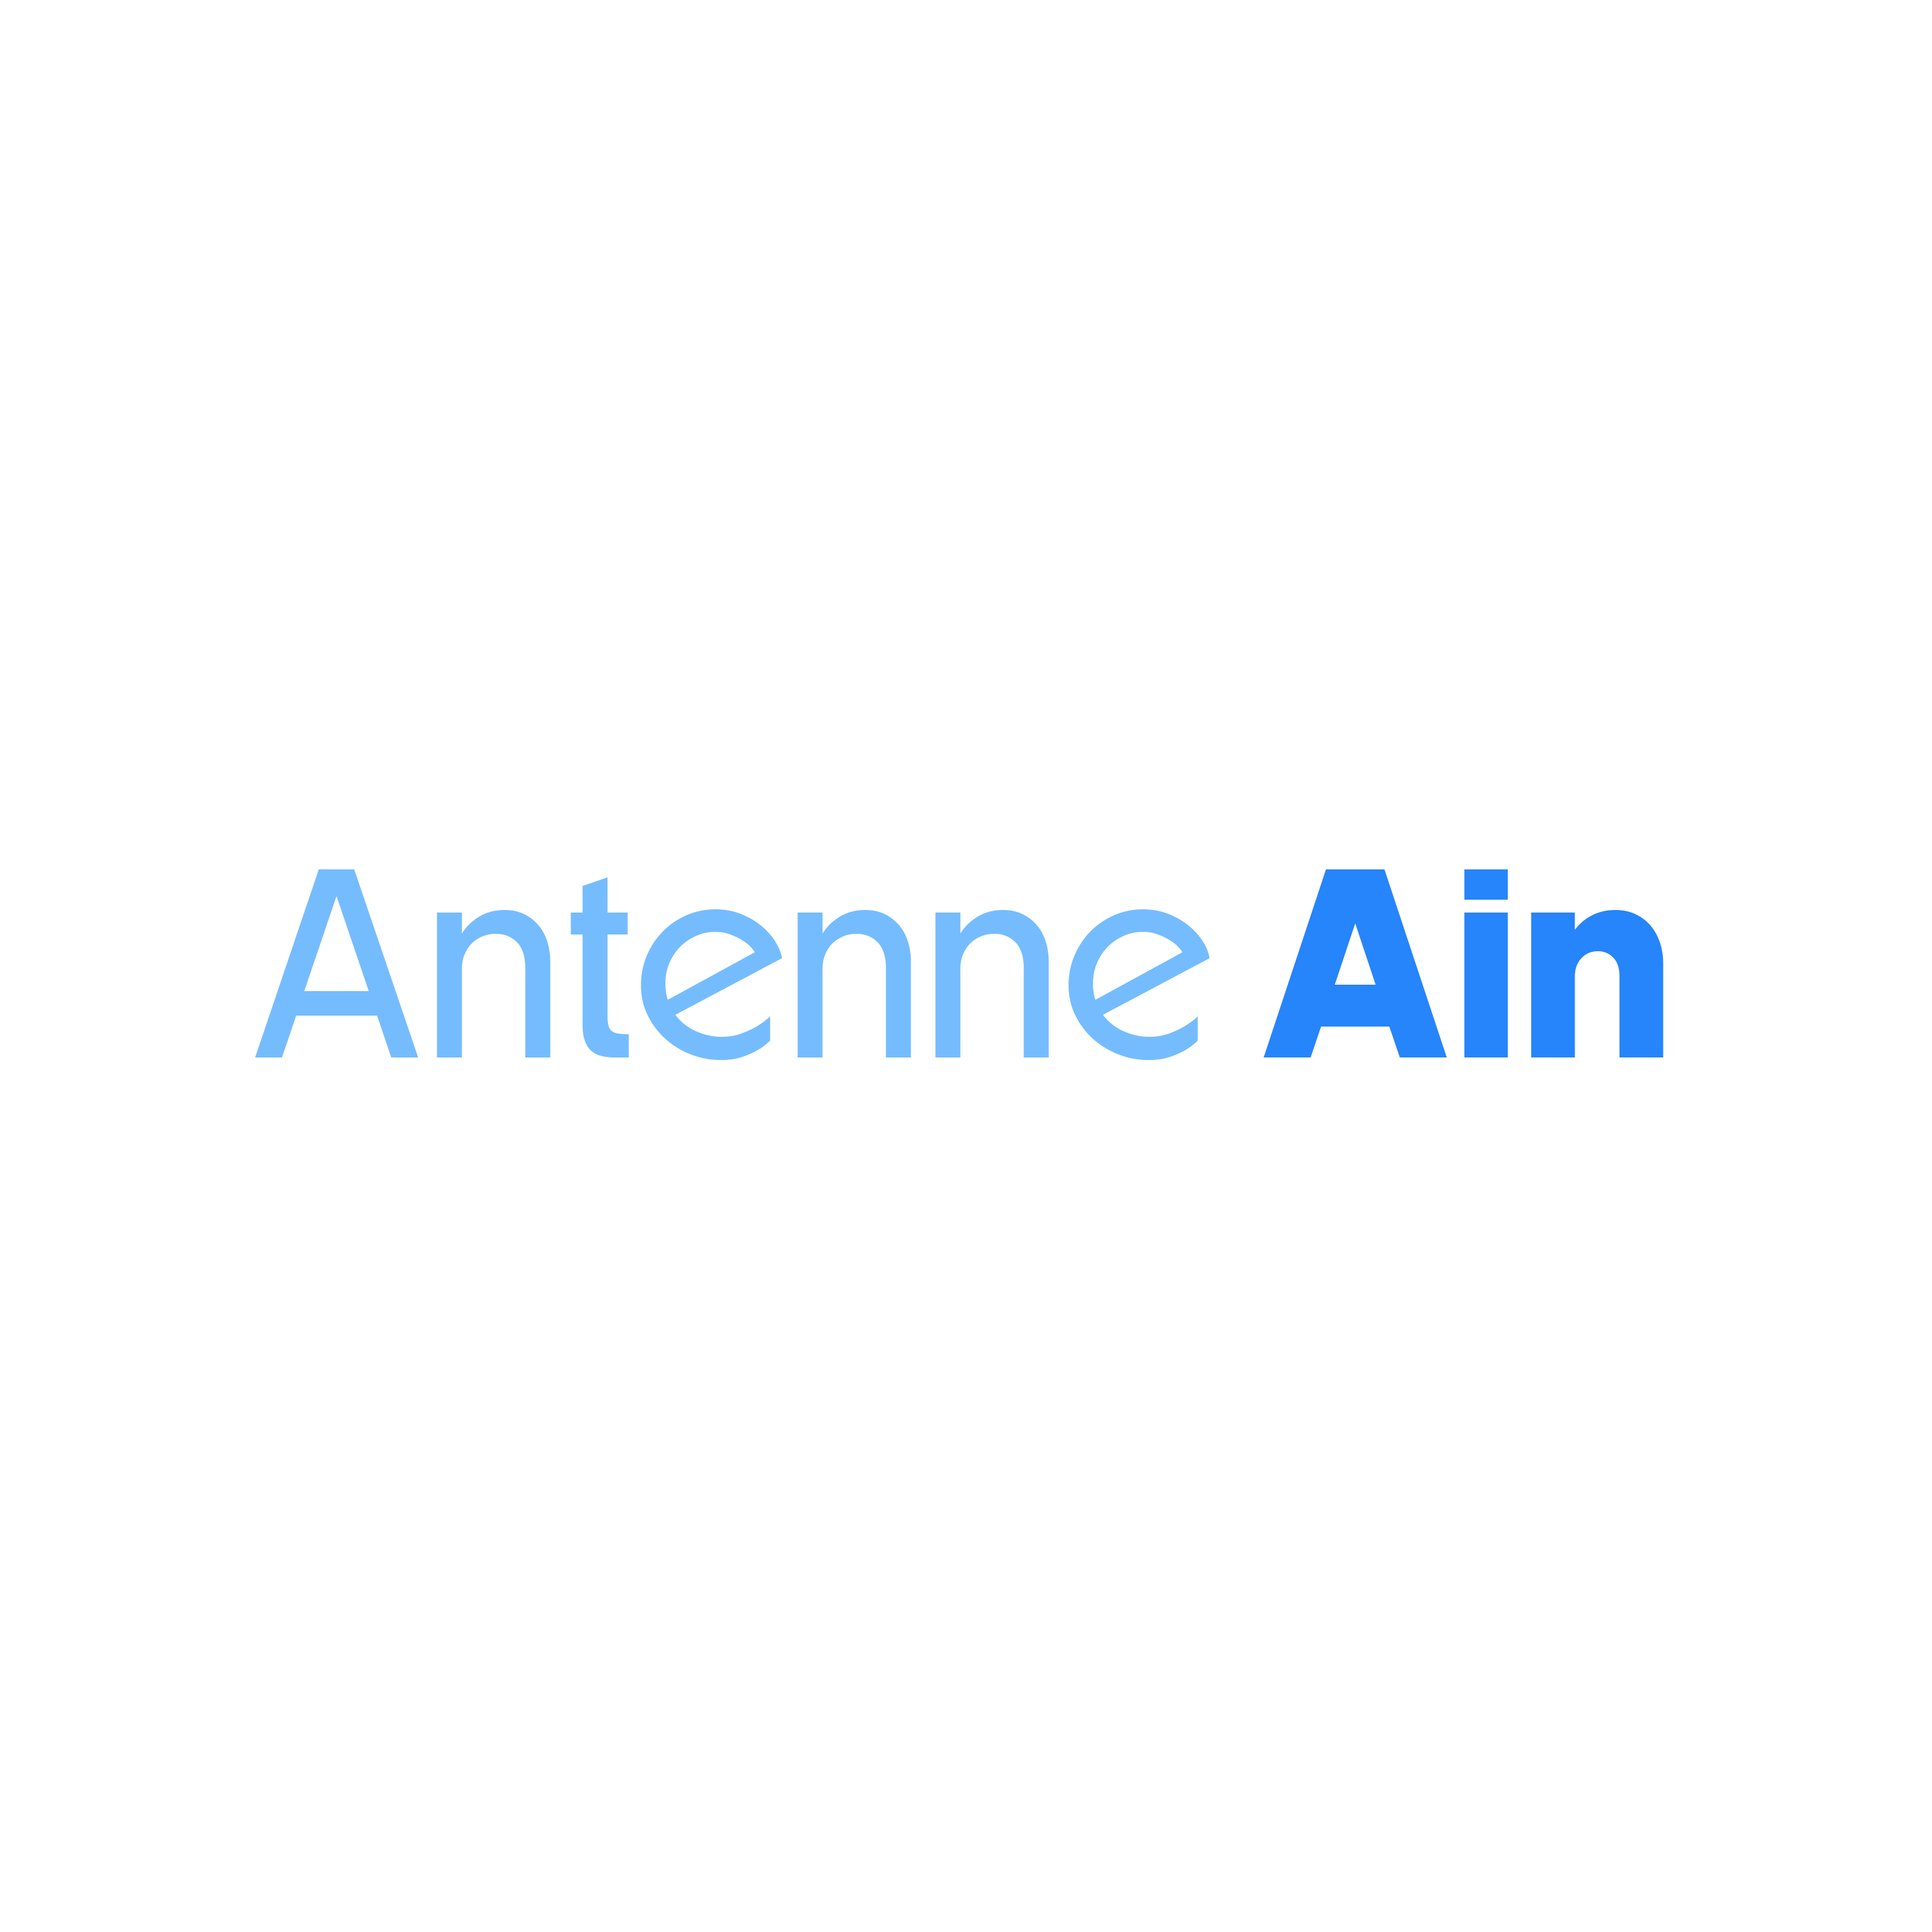 Antenne Ain